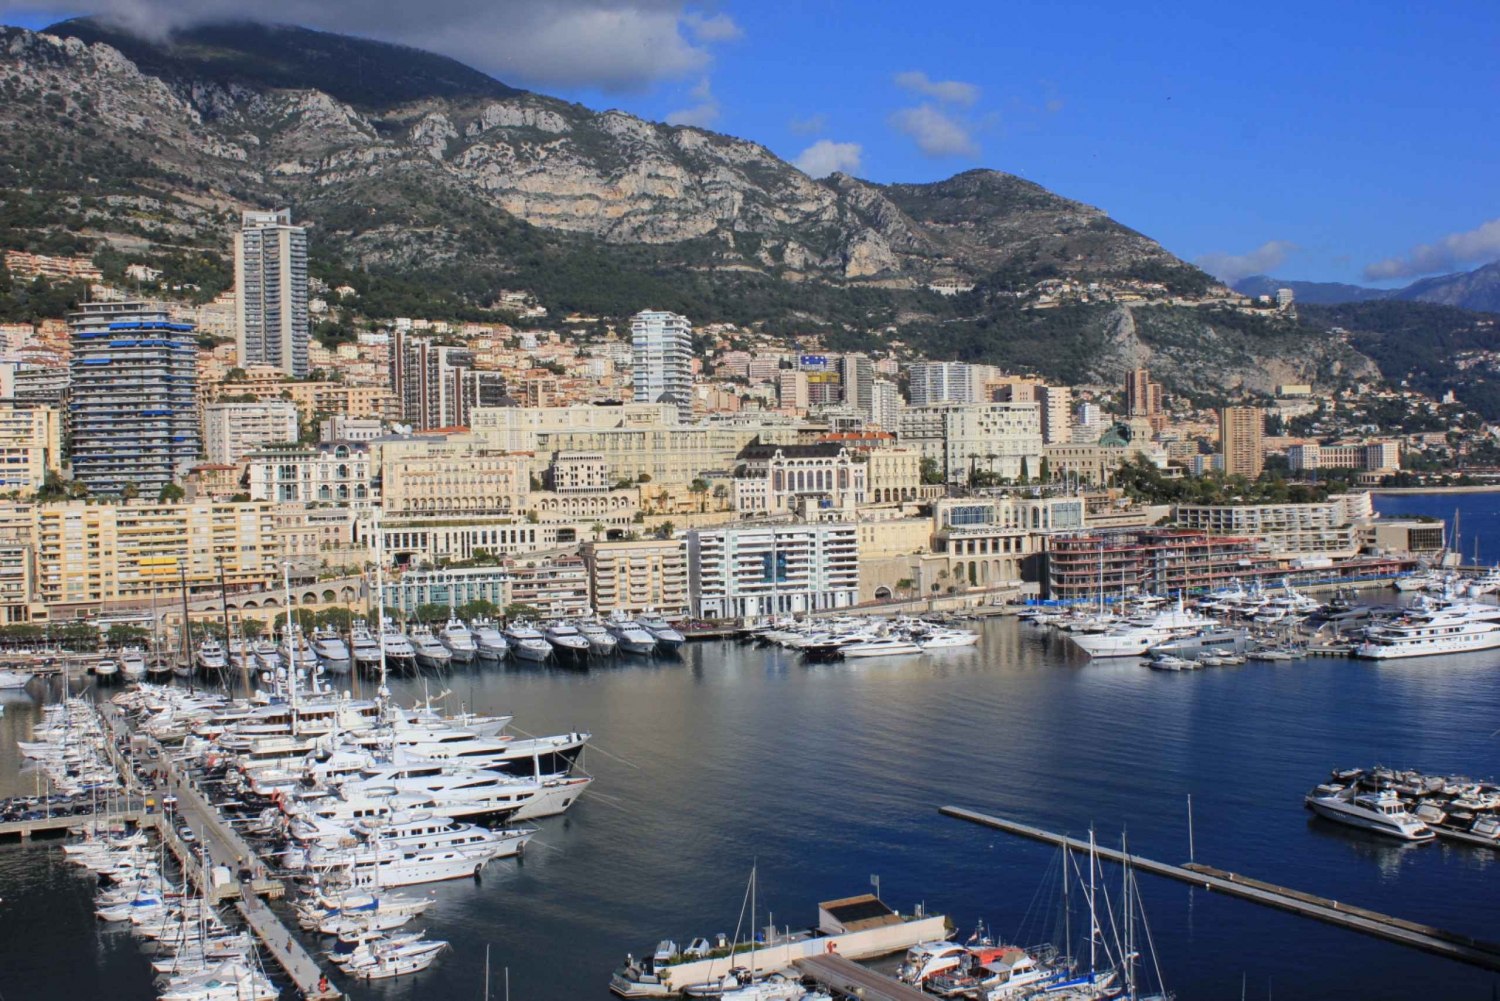 Eze Village, Monaco, and Monte Carlo Day Tour